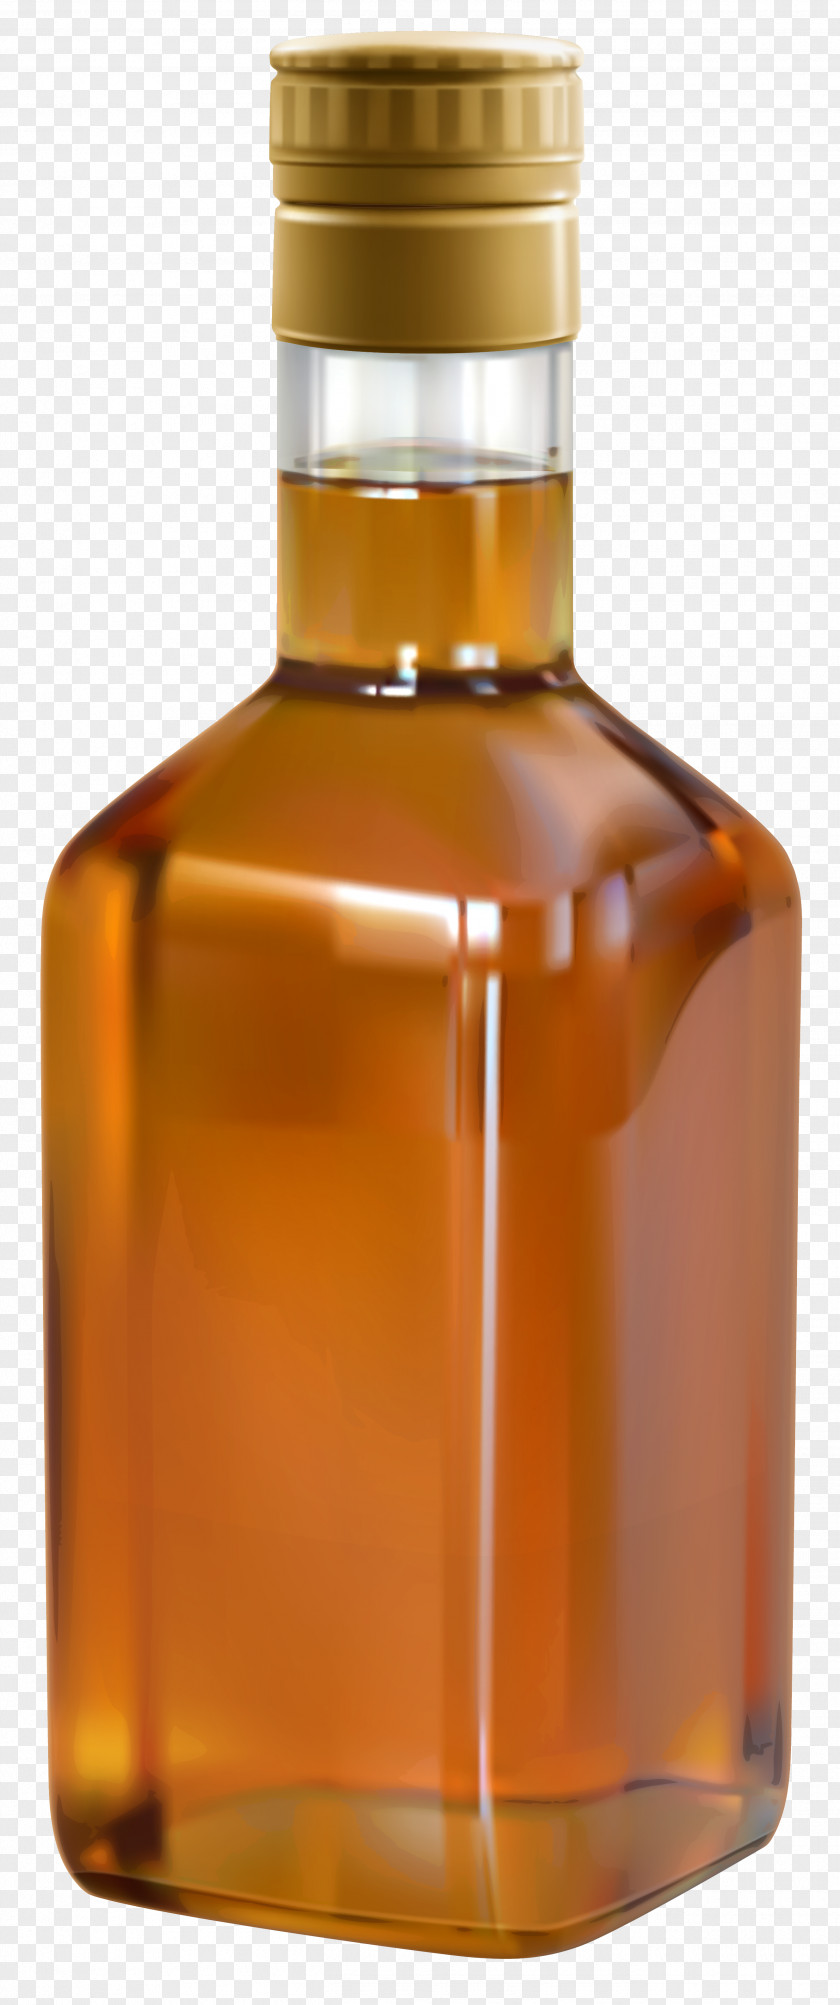 Bottle Bourbon Whiskey Scotch Whisky Single Malt Distilled Beverage PNG